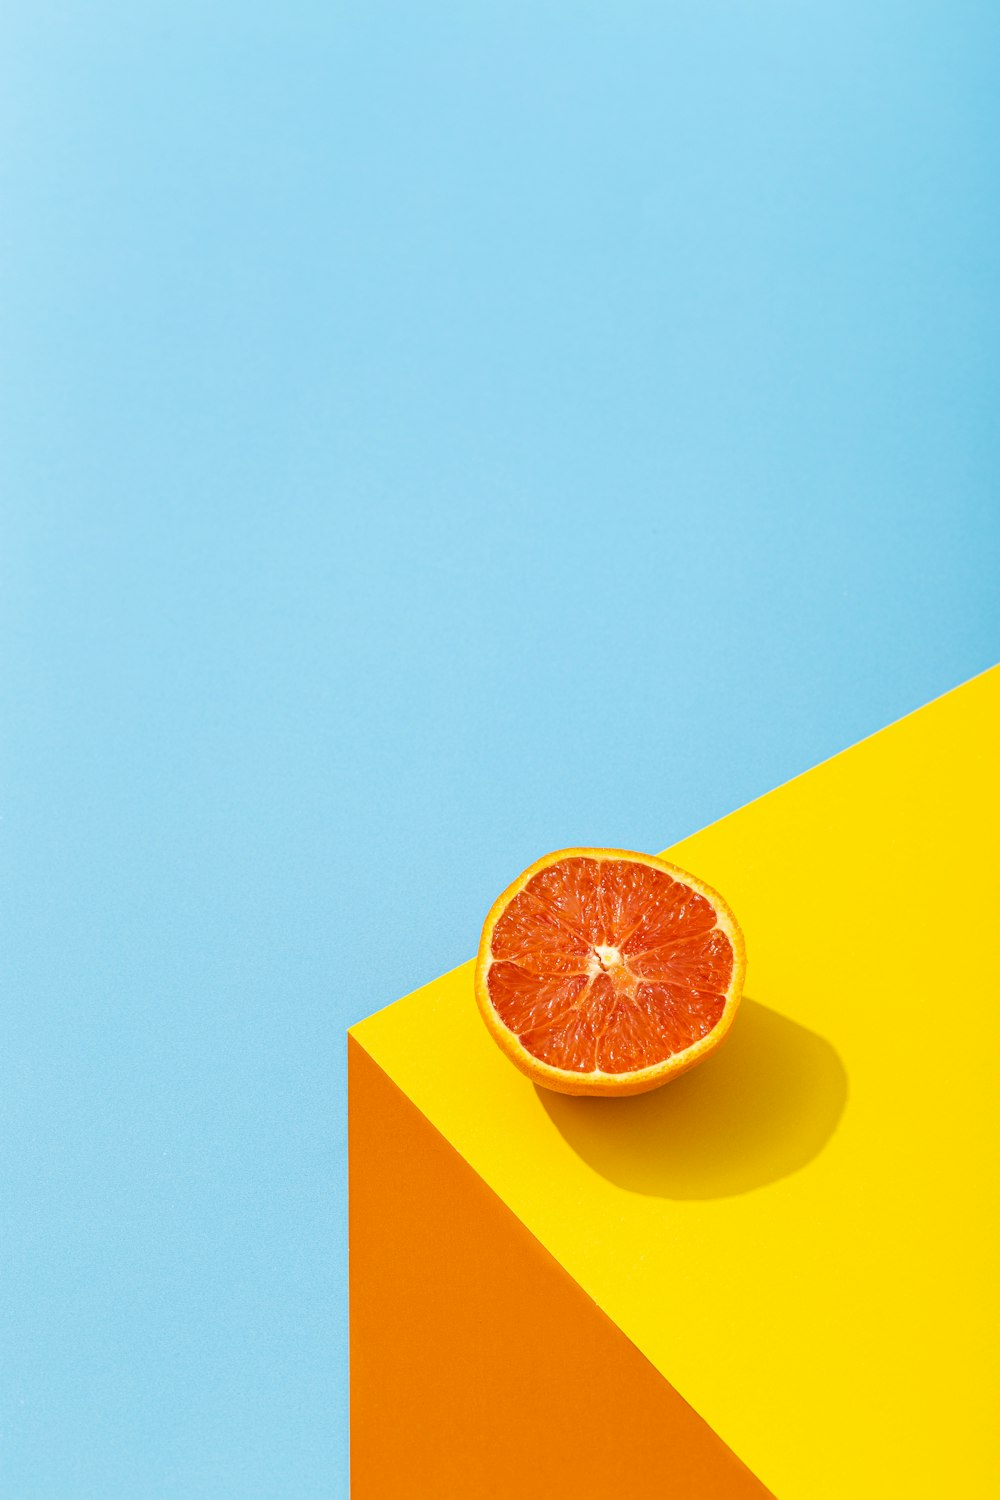 Màu cam là một trong những gam màu được yêu thích và sử dụng rộng rãi trong thiết kế hình ảnh. Nếu bạn là tín đồ của màu cam, hãy xem tất cả các mẫu nền màu cam trong danh sách dưới đây. Tất cả đều đẹp và sáng tạo, chắc chắn sẽ làm cho màn hình máy tính của bạn trở nên đẹp hơn hẳn.